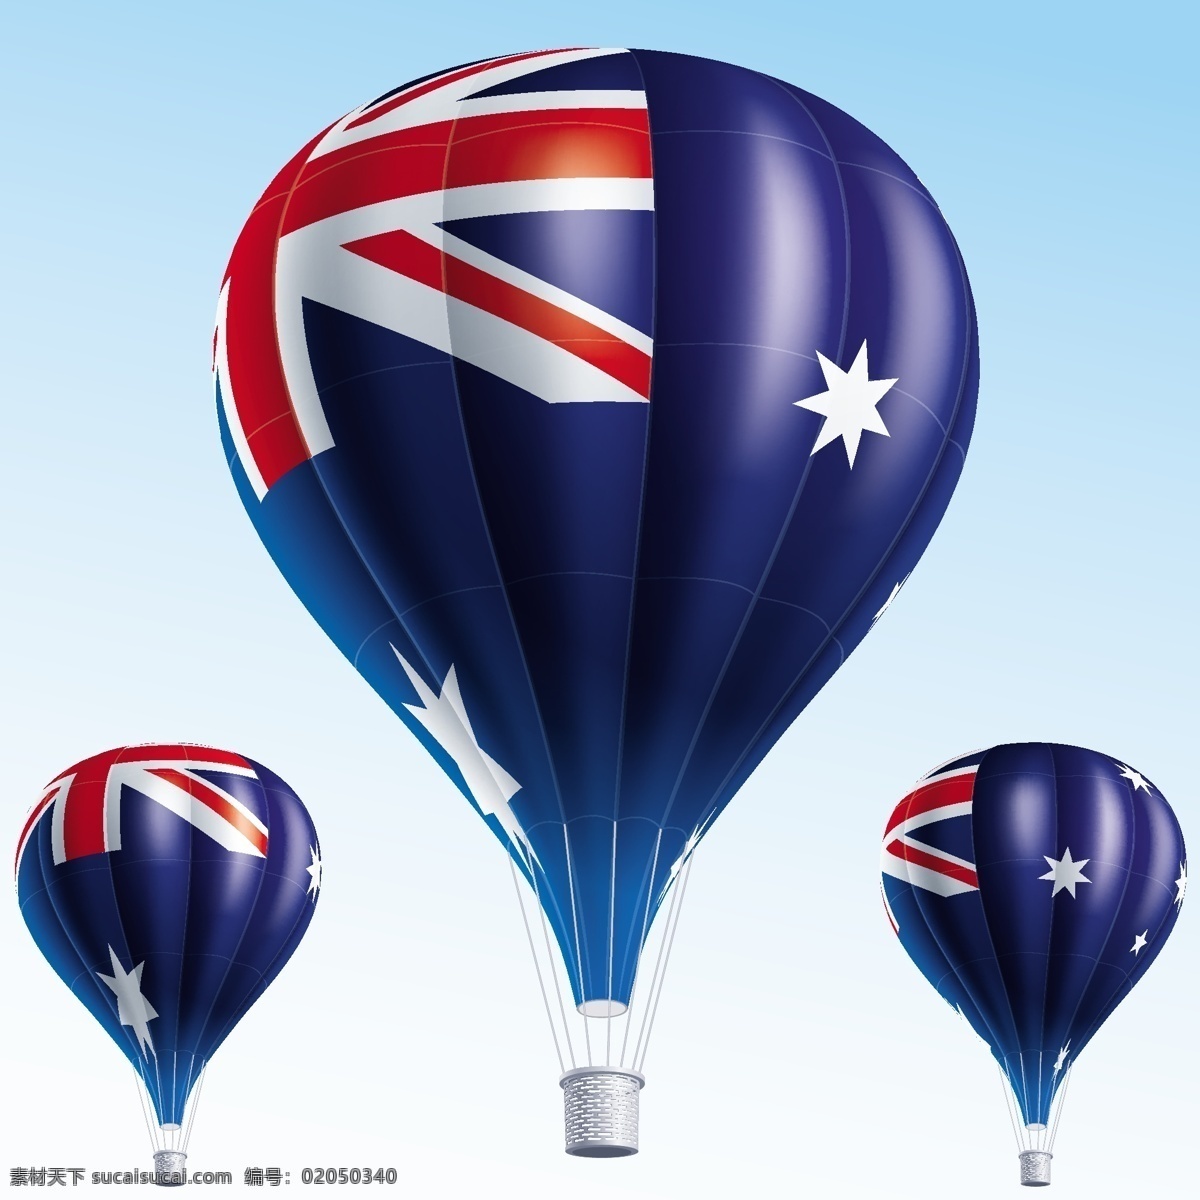 澳大利亚 国旗 热气球 蓝天 澳大利亚国旗 国旗图片 生活百科